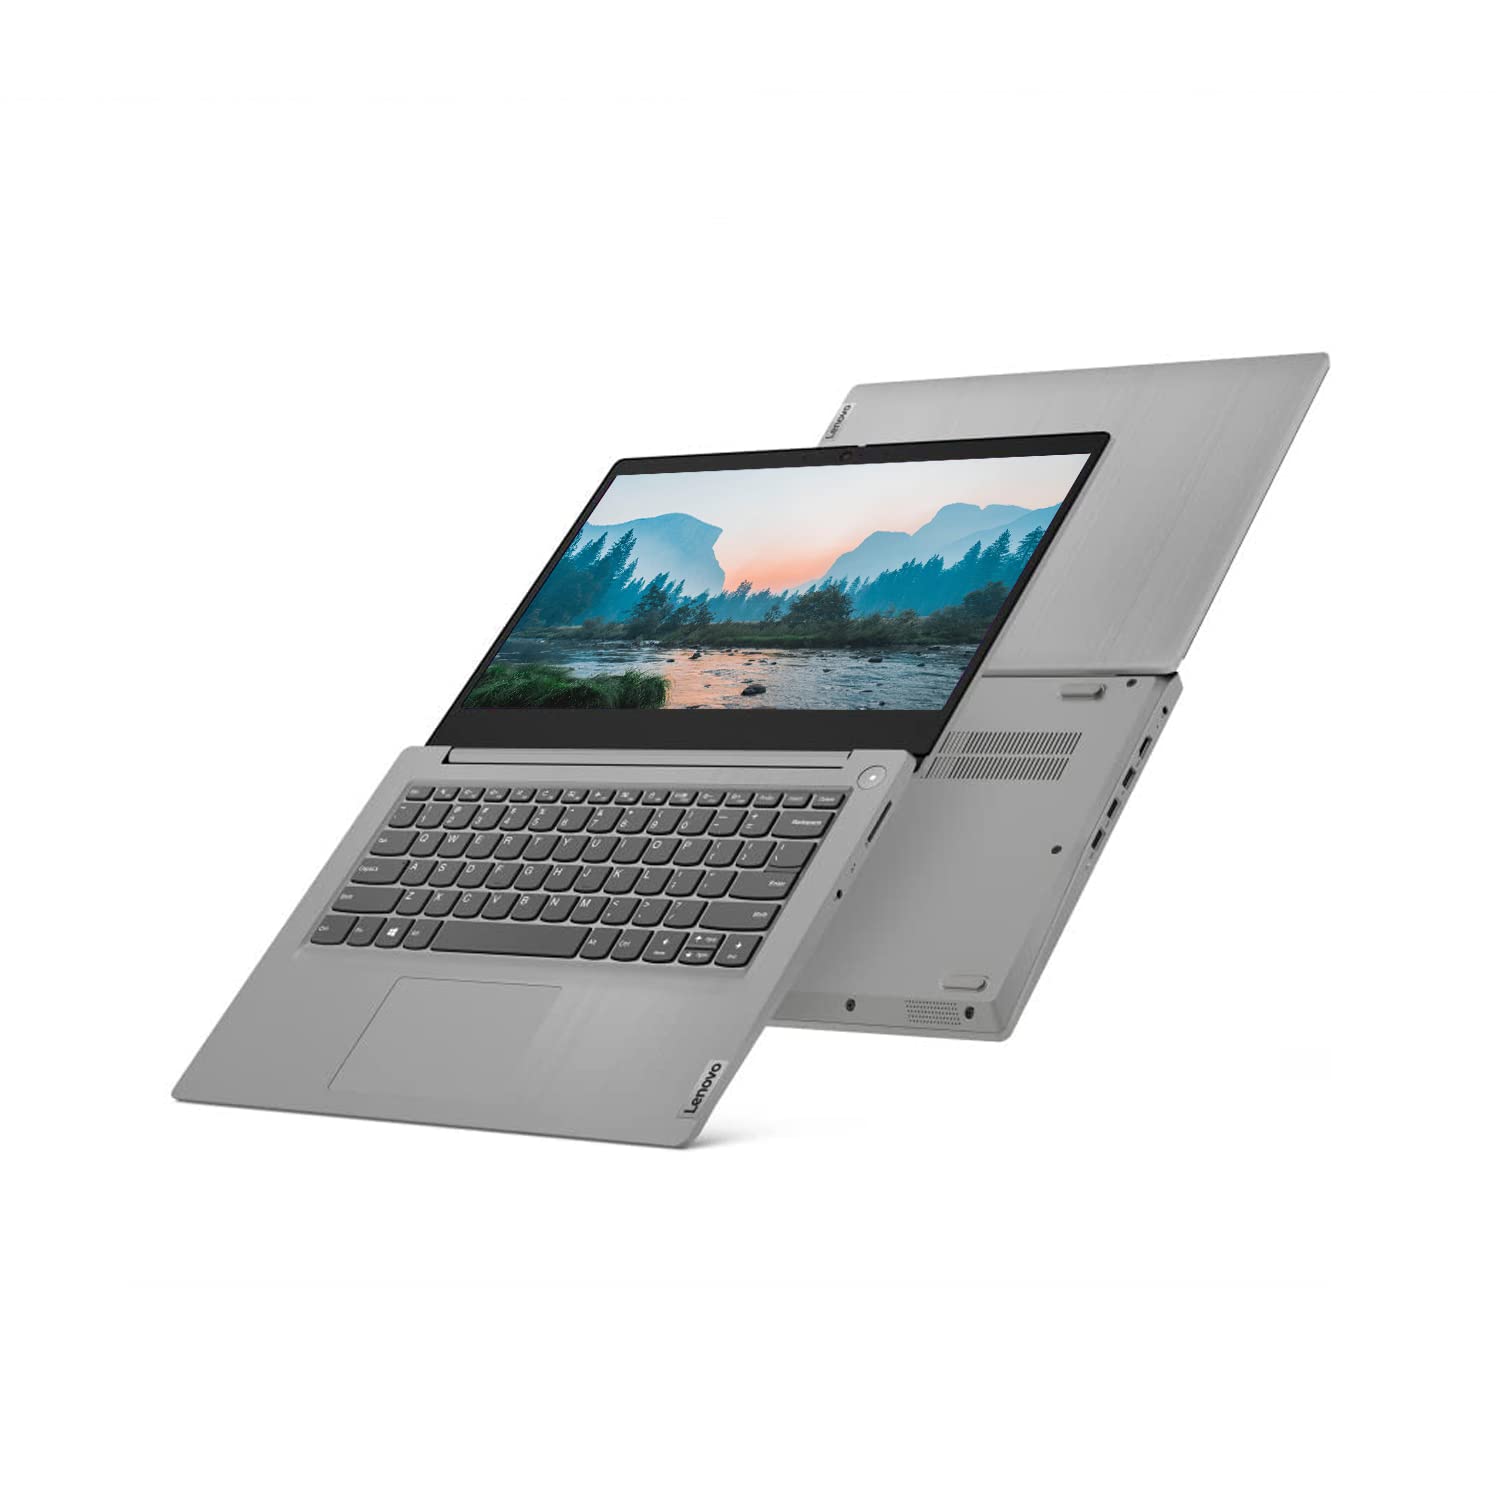 Lenovo IdeaPad 3i Laptop, 14" FHD Screen, Intel i3-1115G4 Processor, 8GB RAM, 512GB SSD, Webcam, HDMI, Media Card Reader, Dolby Audio, Wi-Fi 6, Windows 11 Home, Platinum Grey